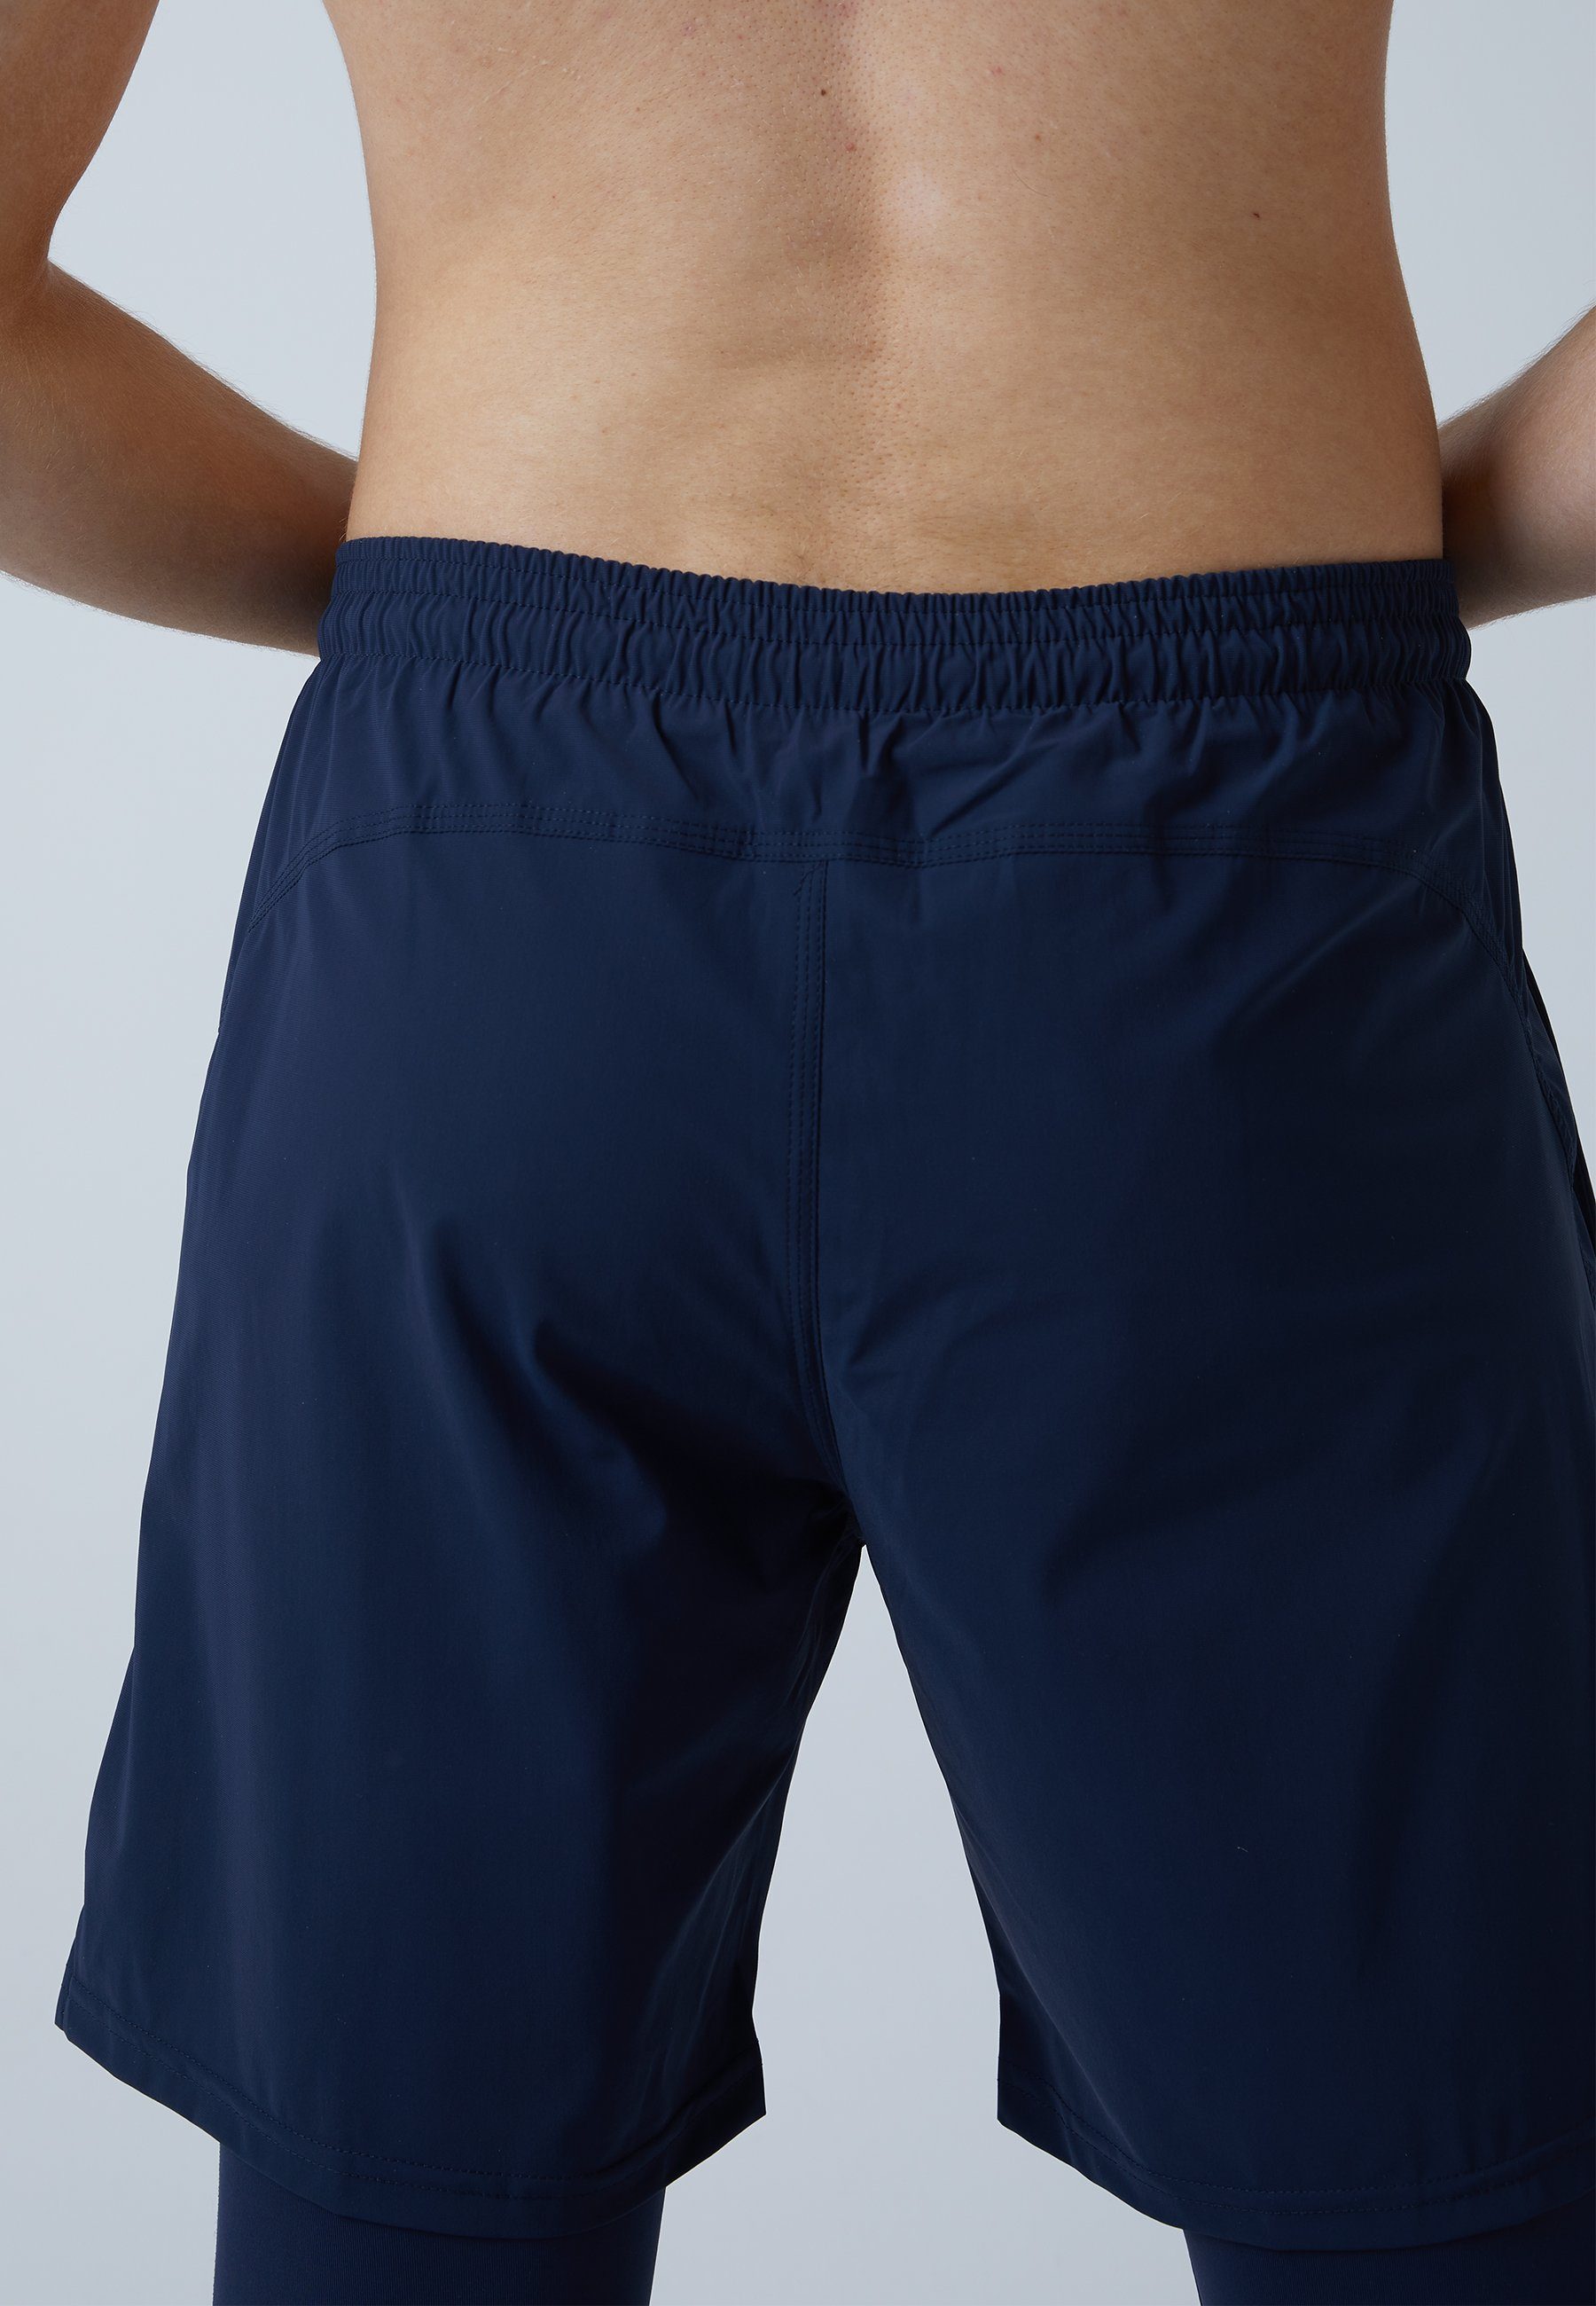 SPORTKIND Sporthose 2-in-1 Shorts Jungen Herren navy Leggings & blau mit